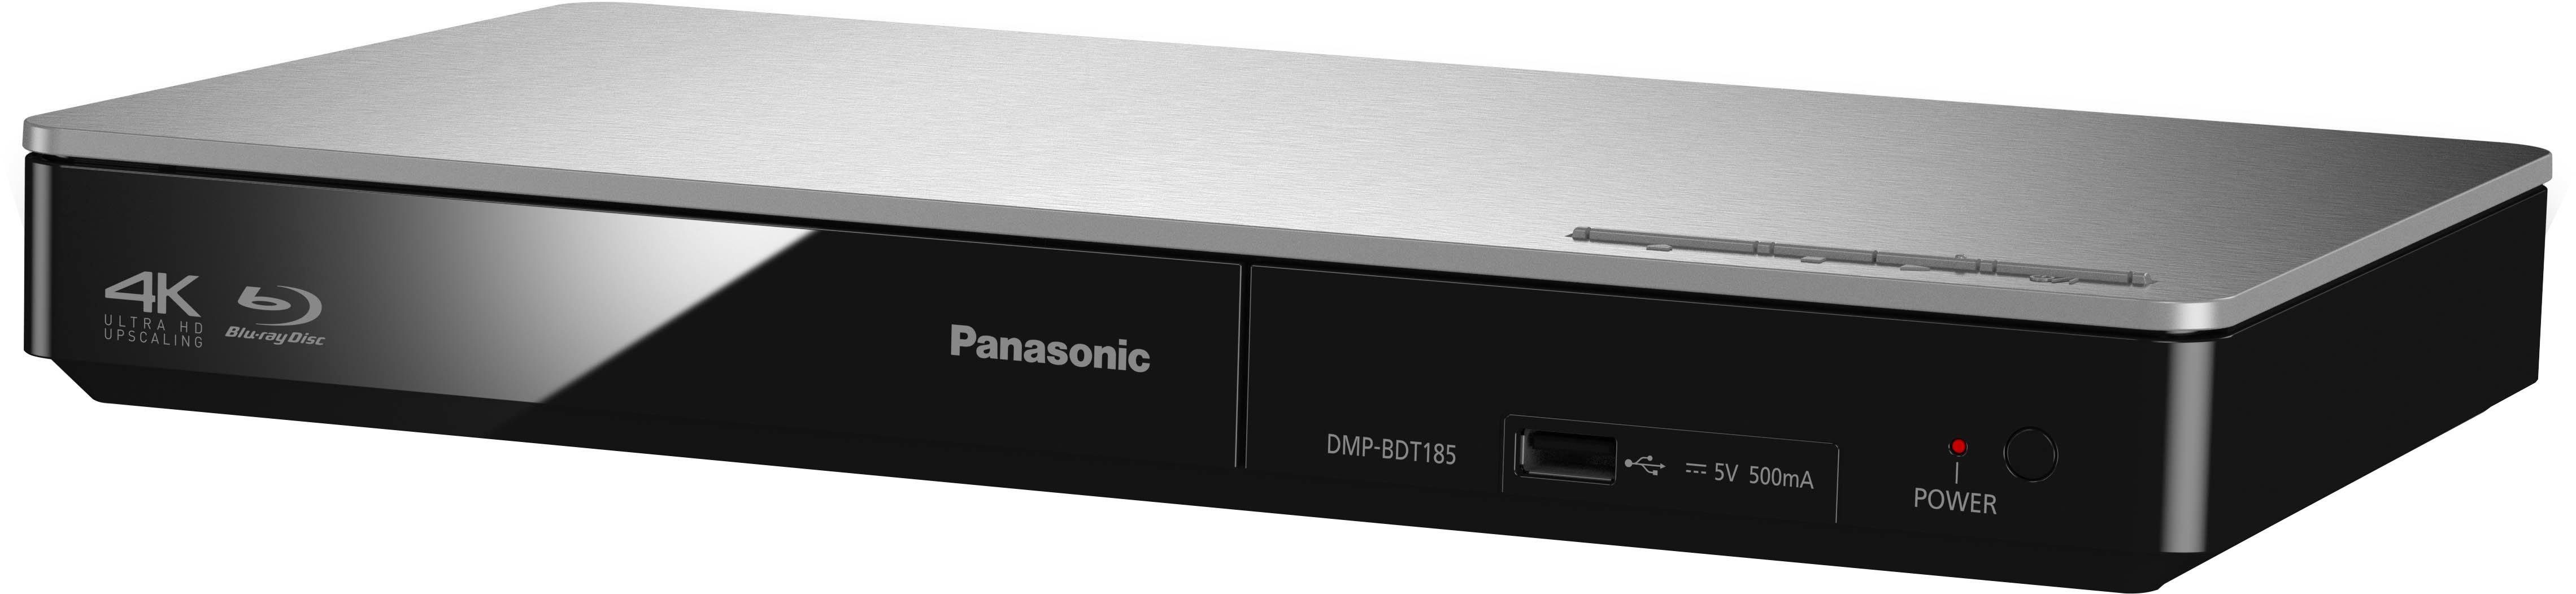 Panasonic DMP-BDT184 / DMP-BDT185 Core dank und Schnelle Prozessor komfortable Upscaling, HDMI-Steuerung Dual (Ethernet), Blu-ray-Player 4K Bedienung und Schnellstart-Modus), (LAN